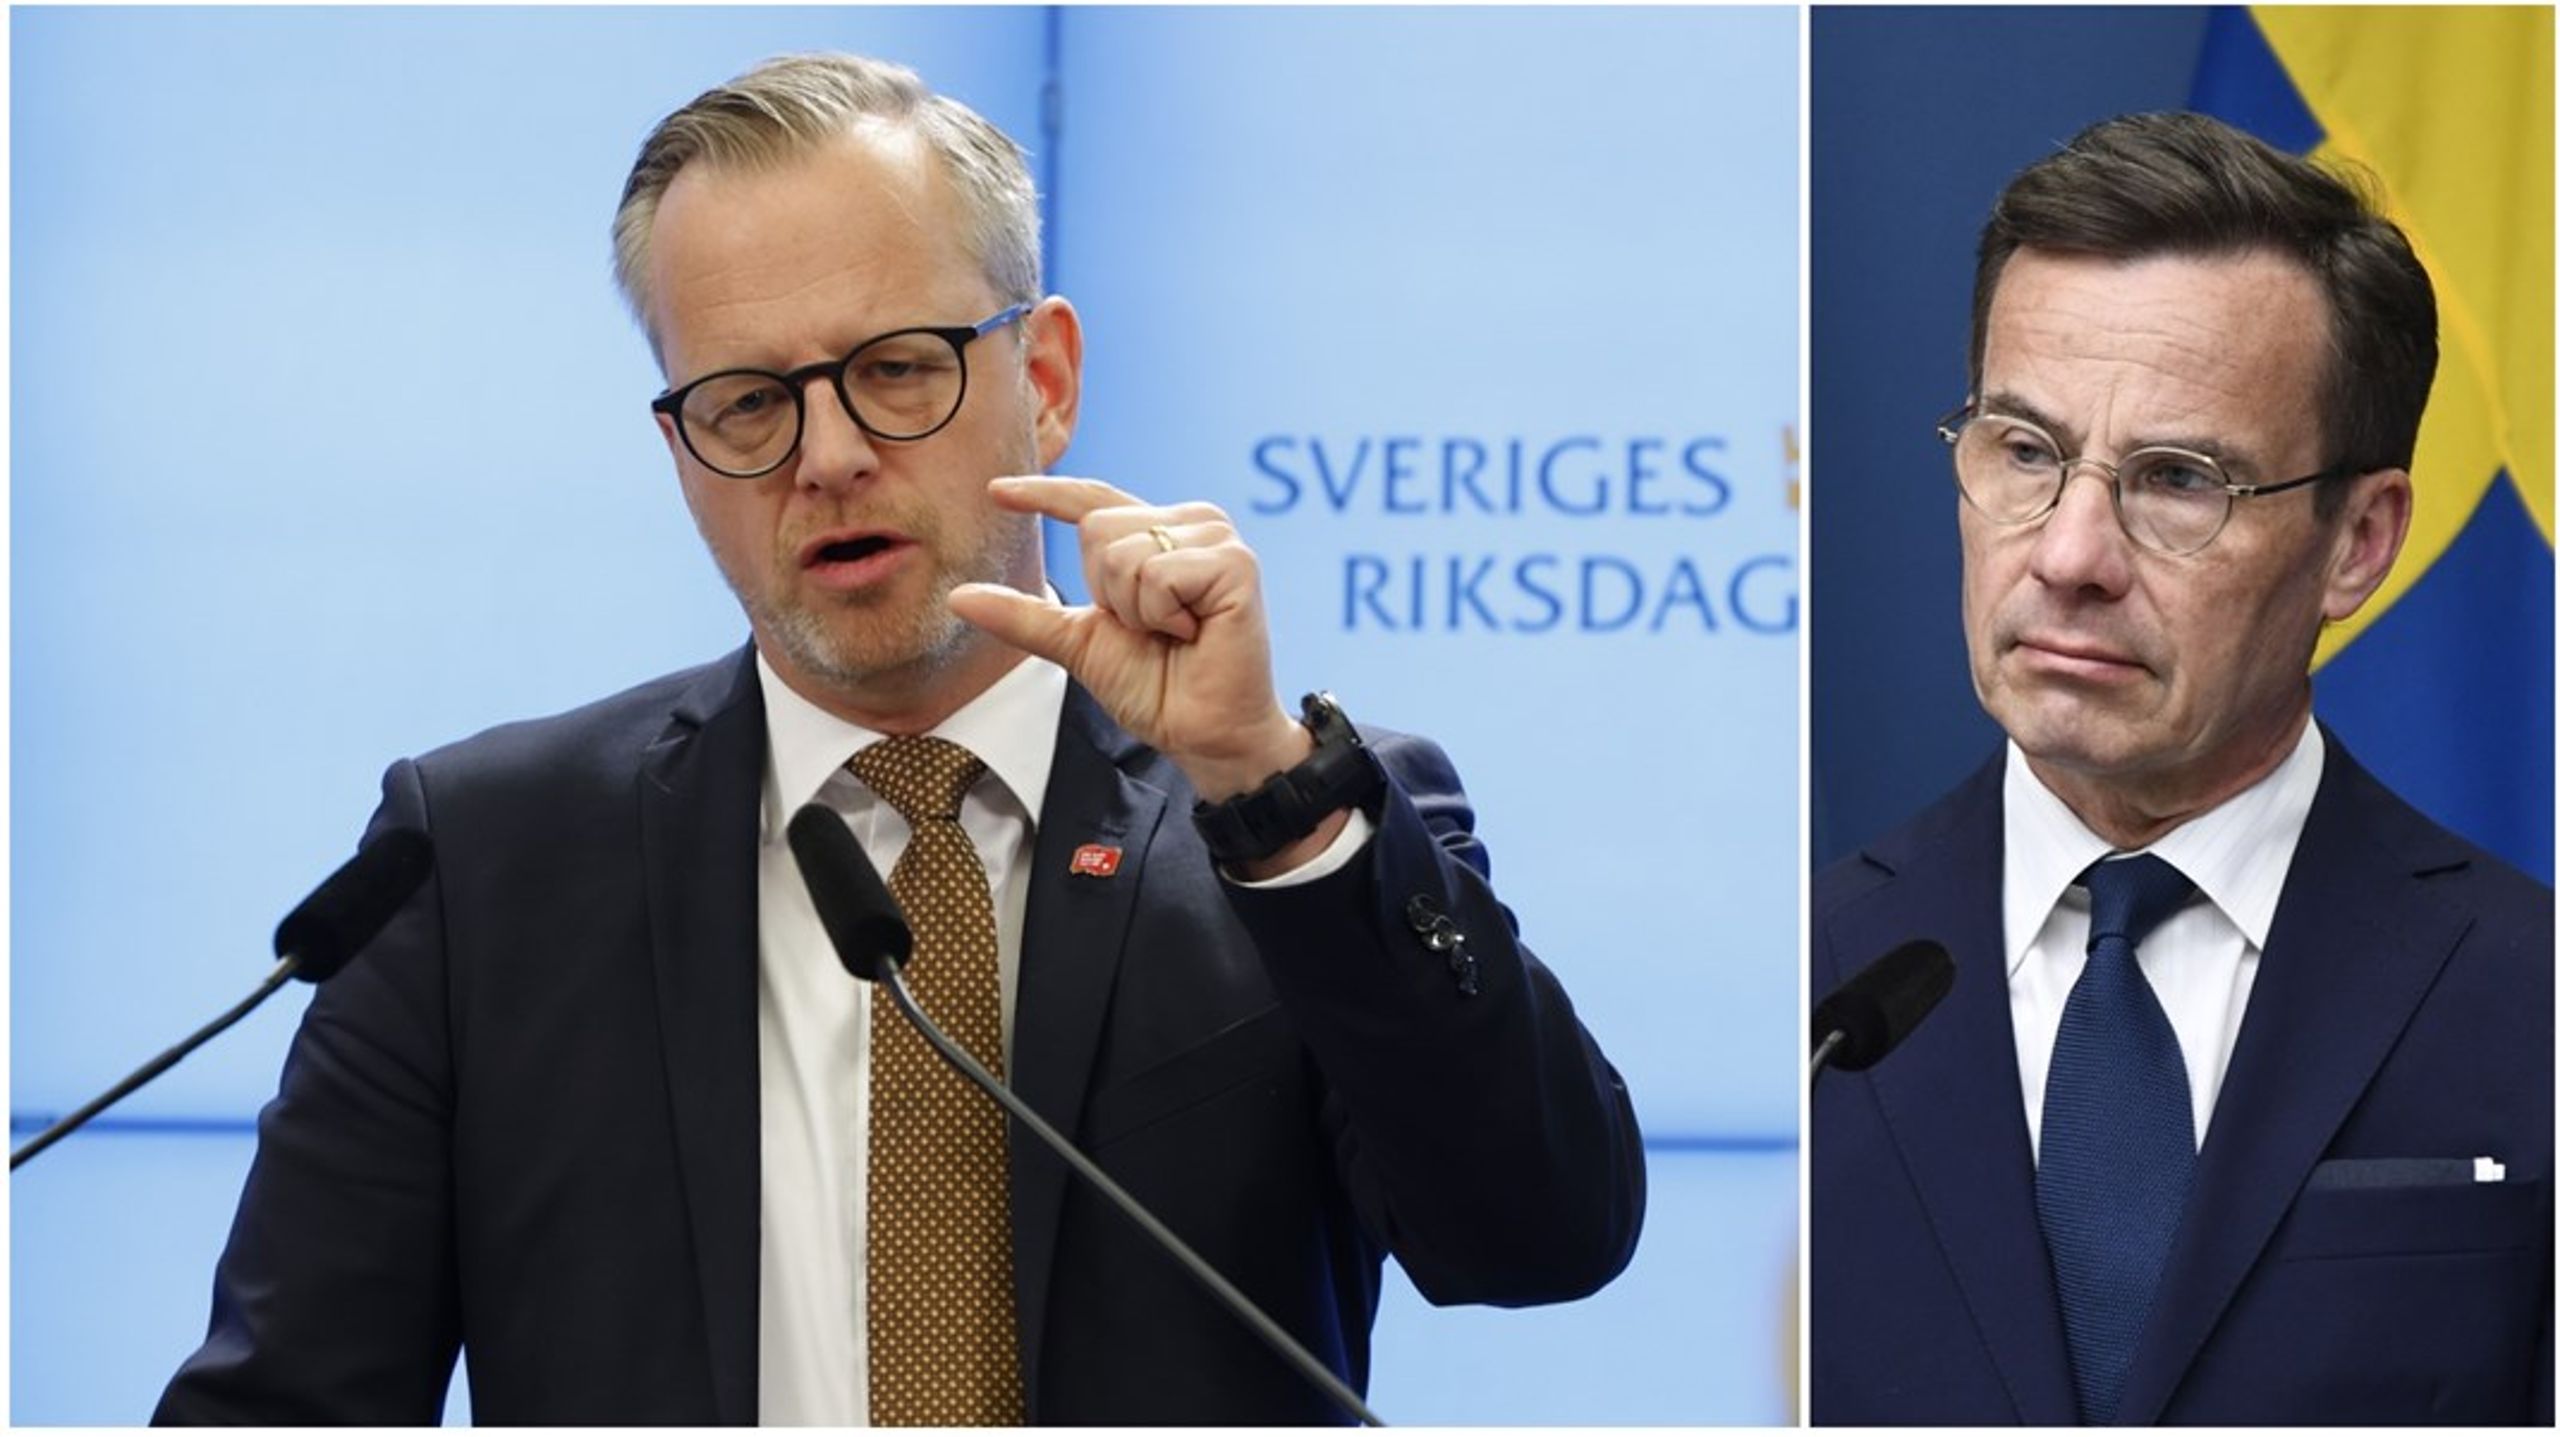 Socialdemokraternas Mikael Damberg (S) vill att Ulf Kristerssons (M) regeringskansli ska få mindre pengar.